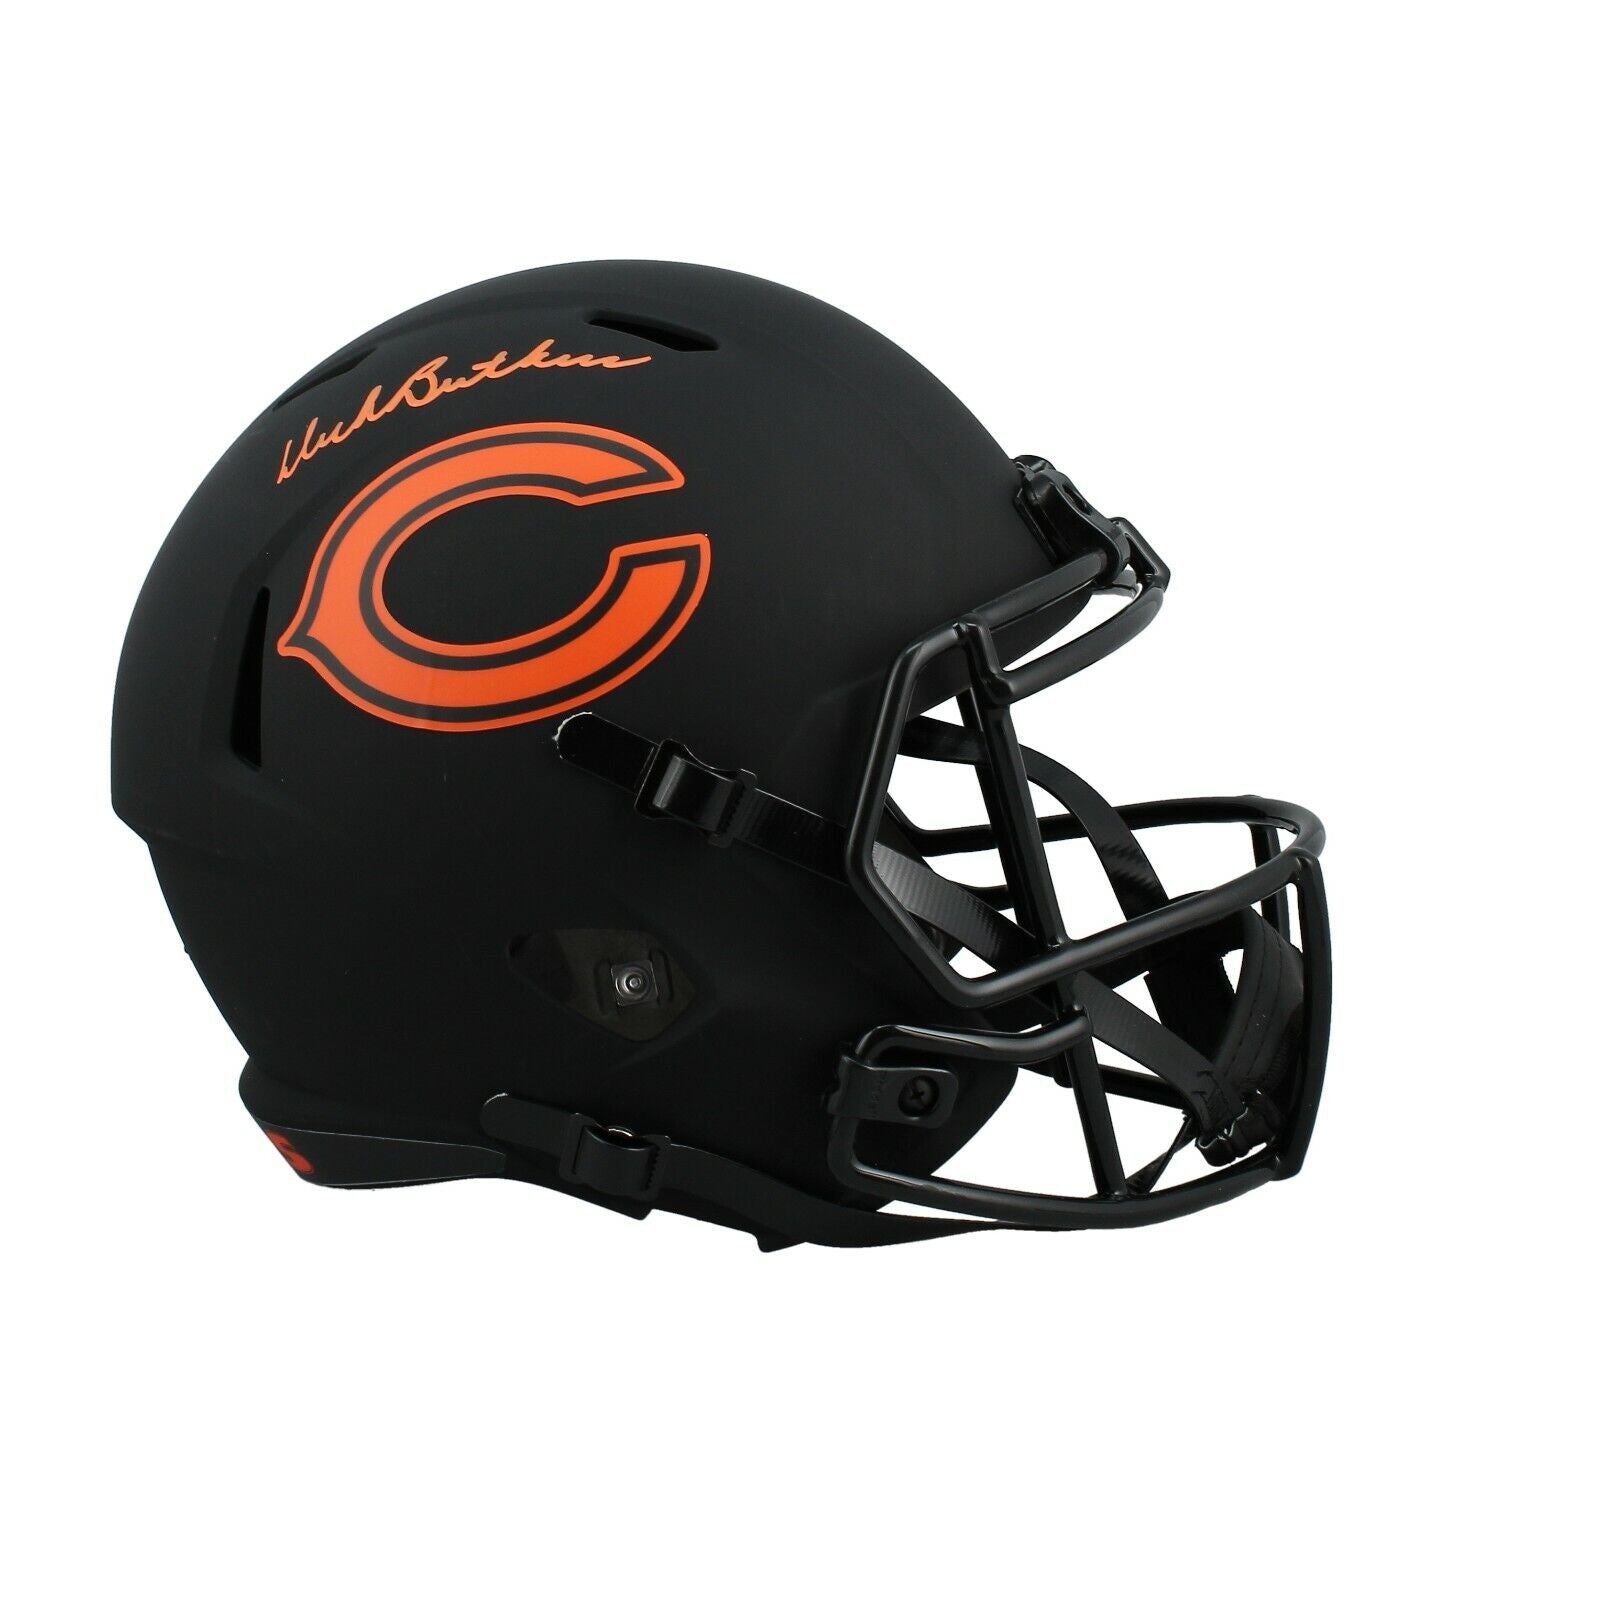 Walter Payton Chicago Bears Signed Riddell Mini Helmet w/ COA